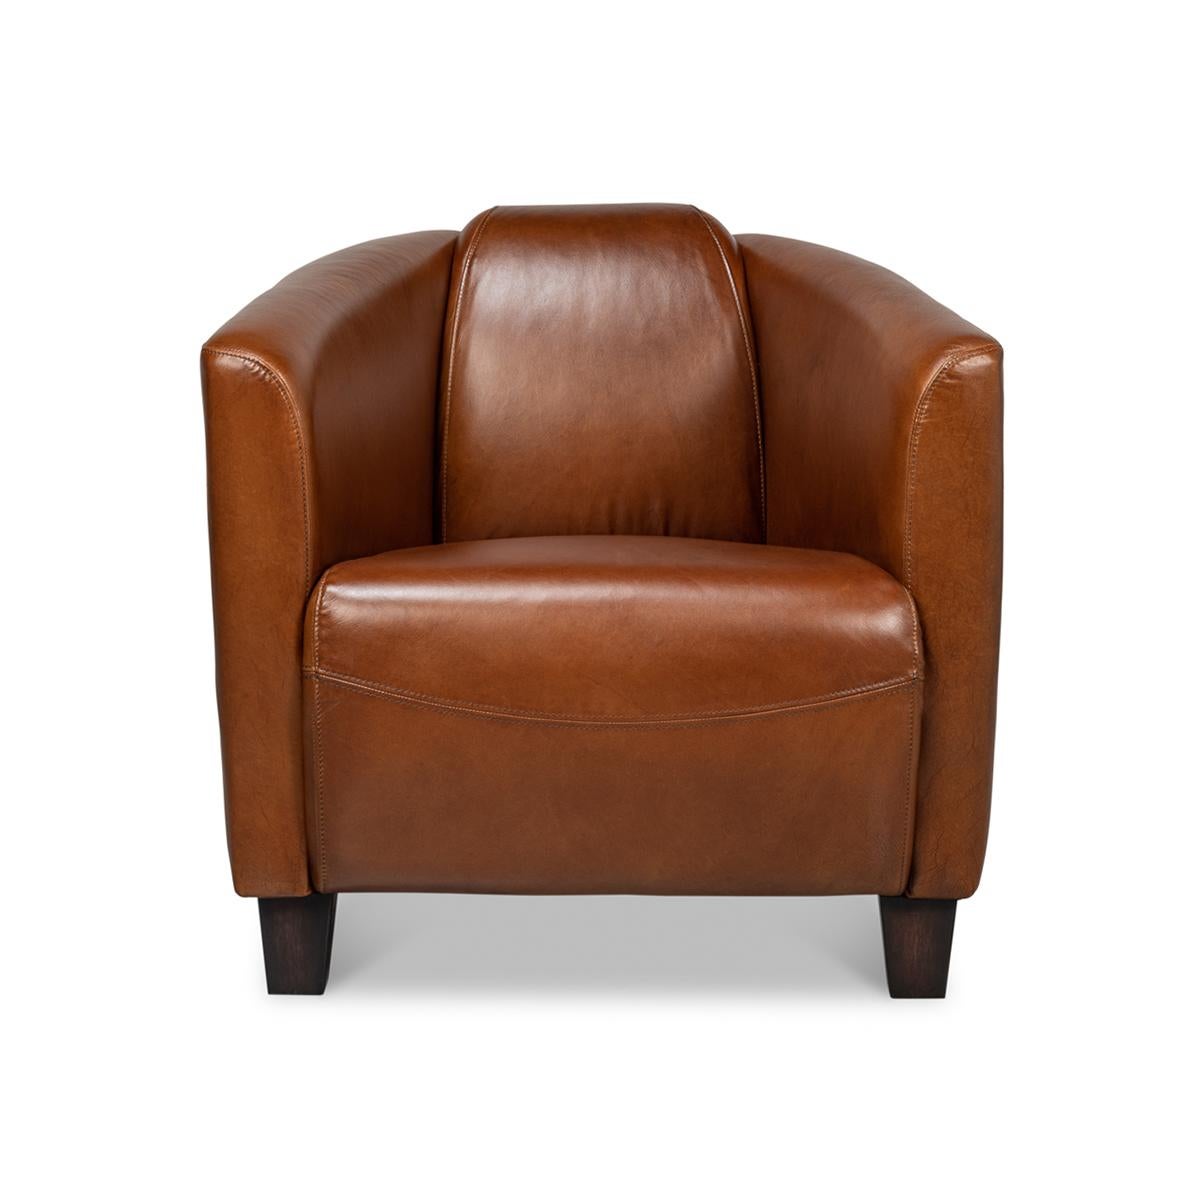 Club-Sessel aus braunem Leder im Vintage-Stil. Dieser stilvolle und bequeme Sessel aus luxuriösem Leder in warmem Braun eignet sich perfekt für Ihr Arbeitszimmer, Ihre Bibliothek oder Ihren Wohnbereich.

Farbabweichungen sind bei altem Leder